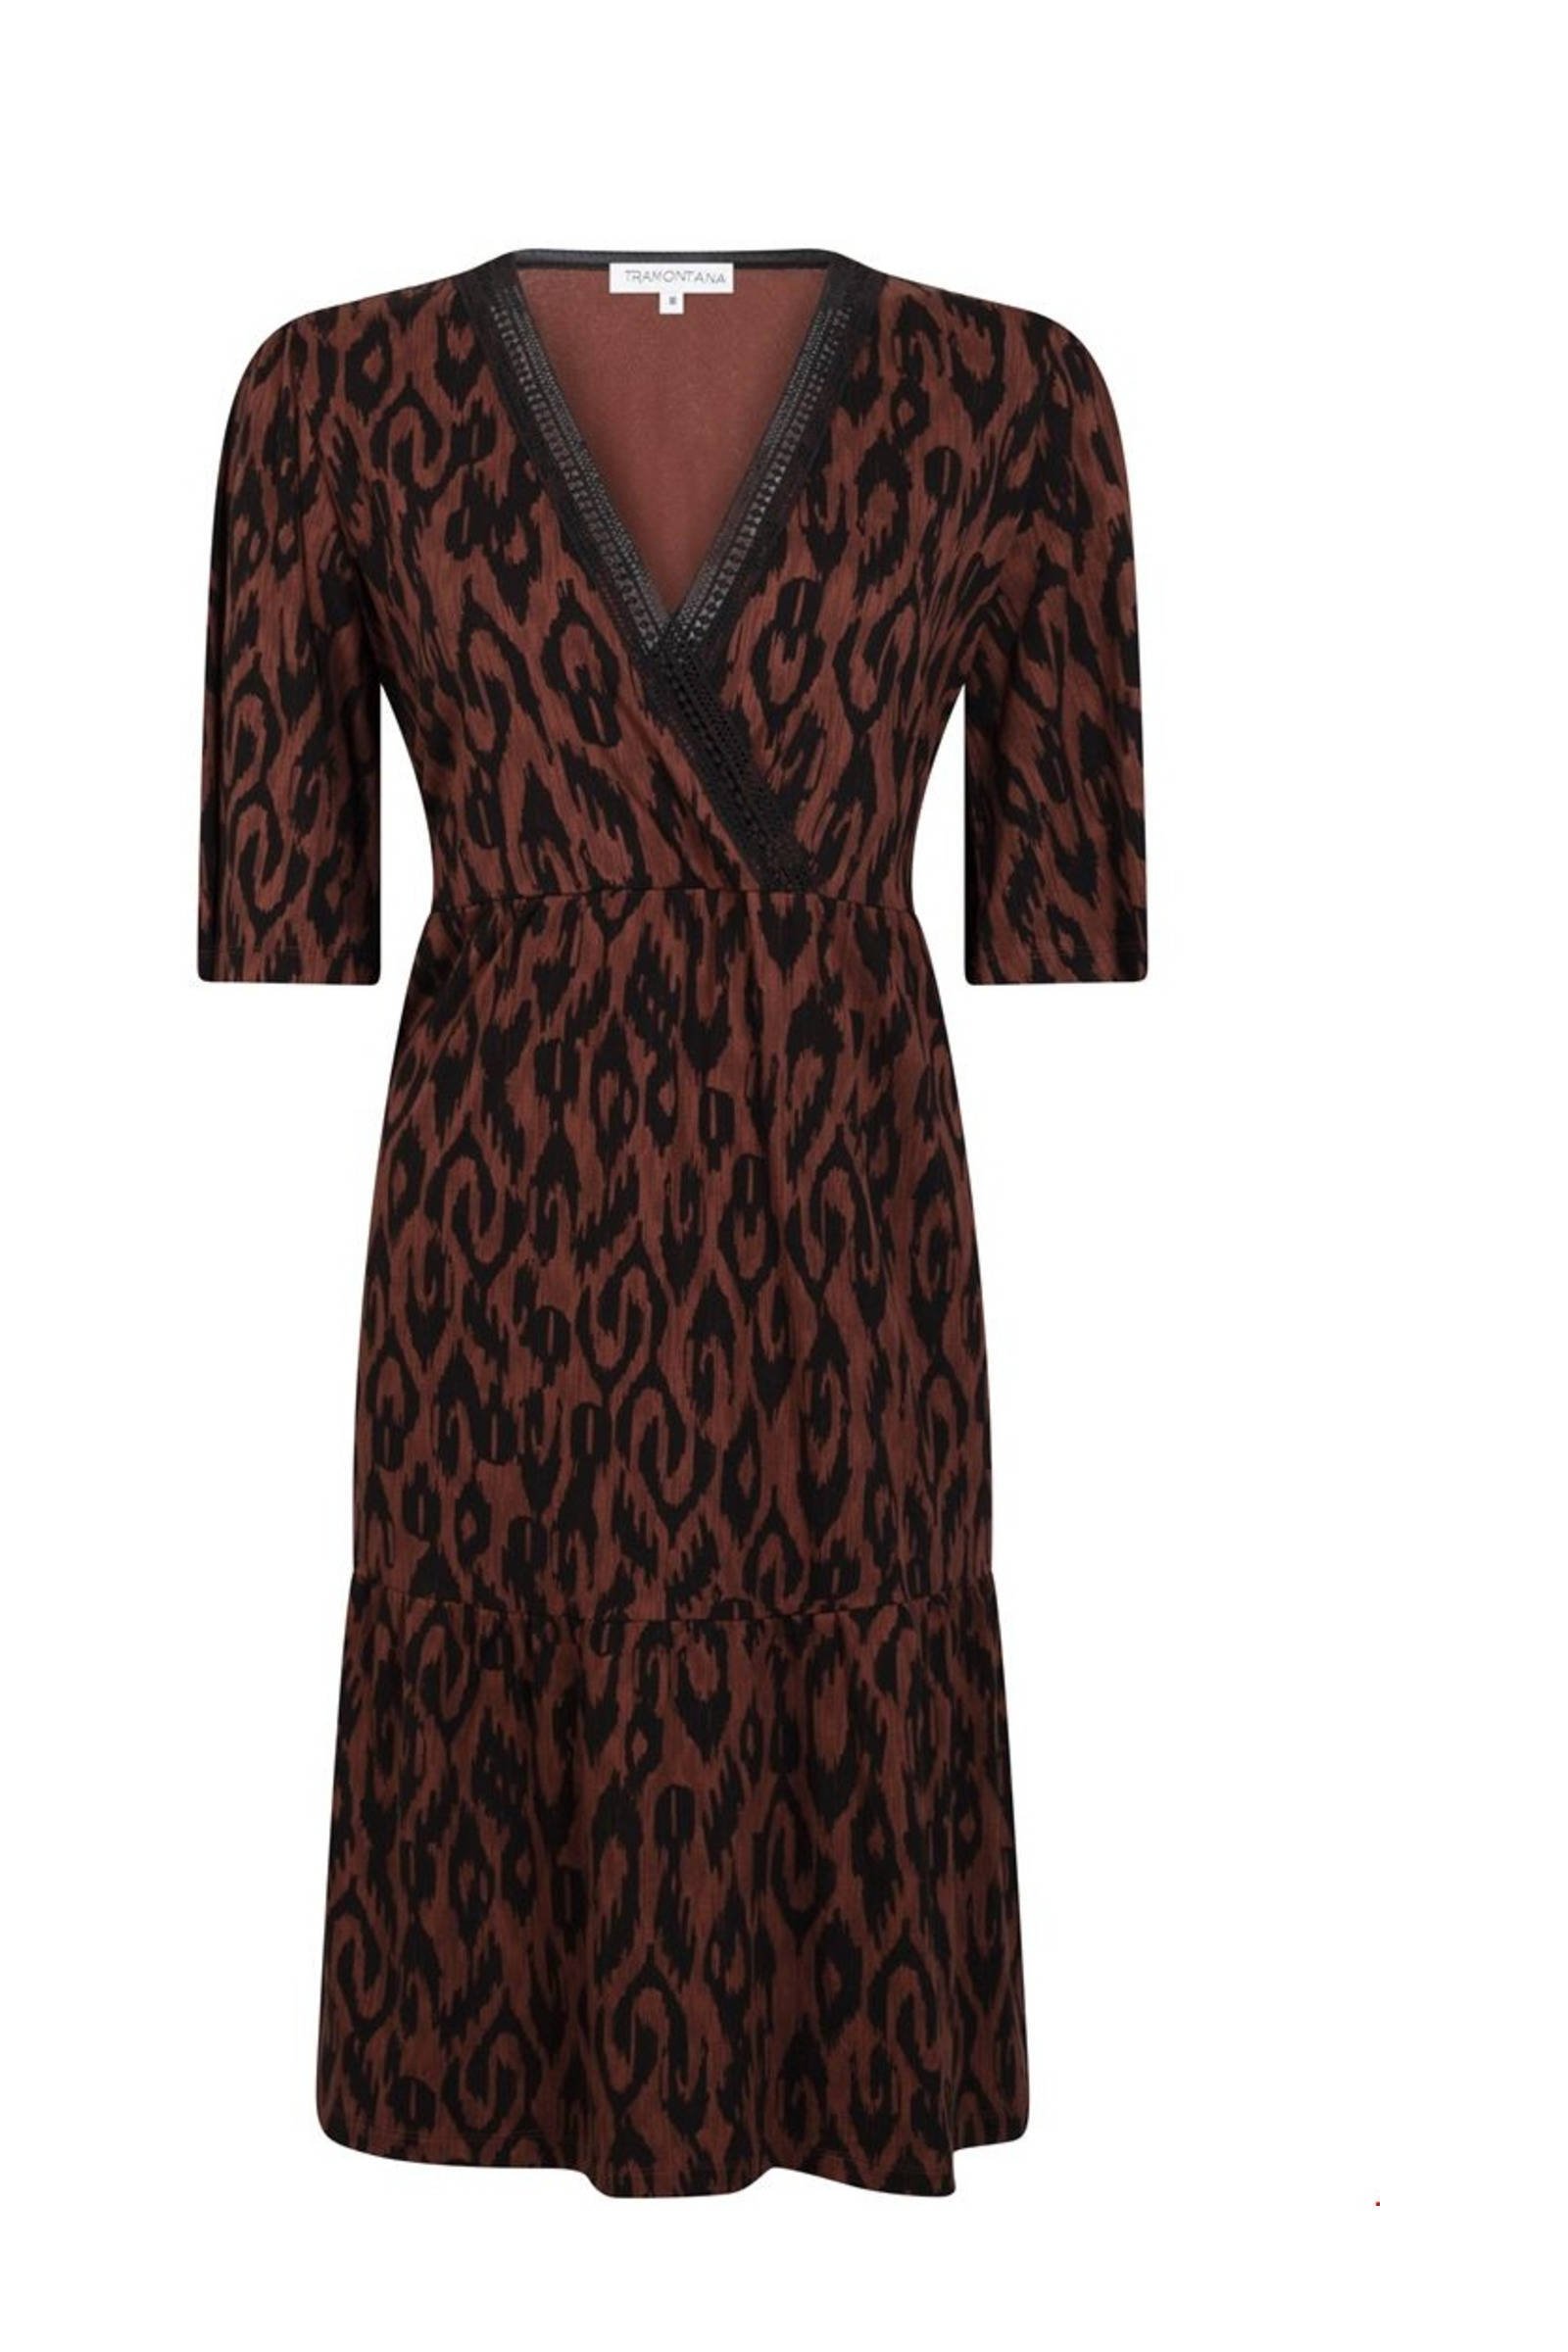 Tramontana A-lijn jurk met all over print bruin/zwart online kopen